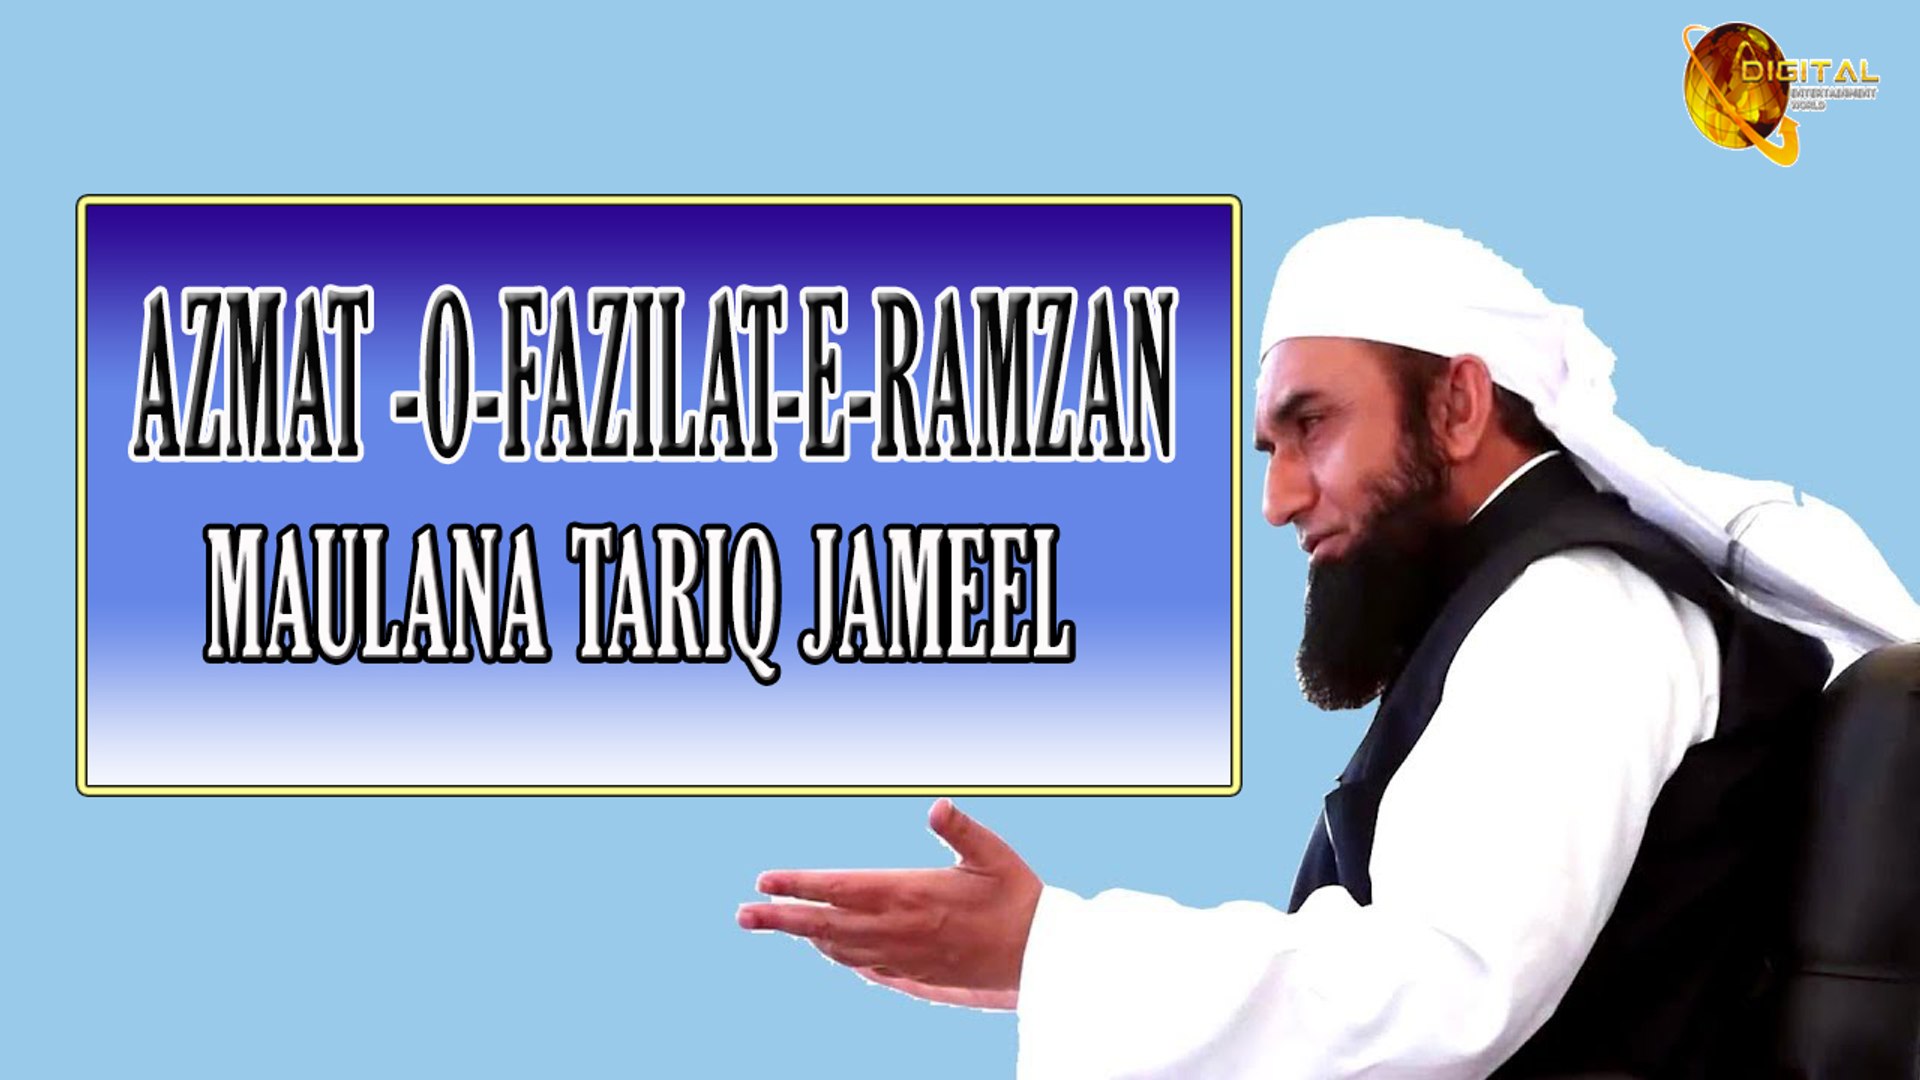 Molana Tariq Jameel Official 2020